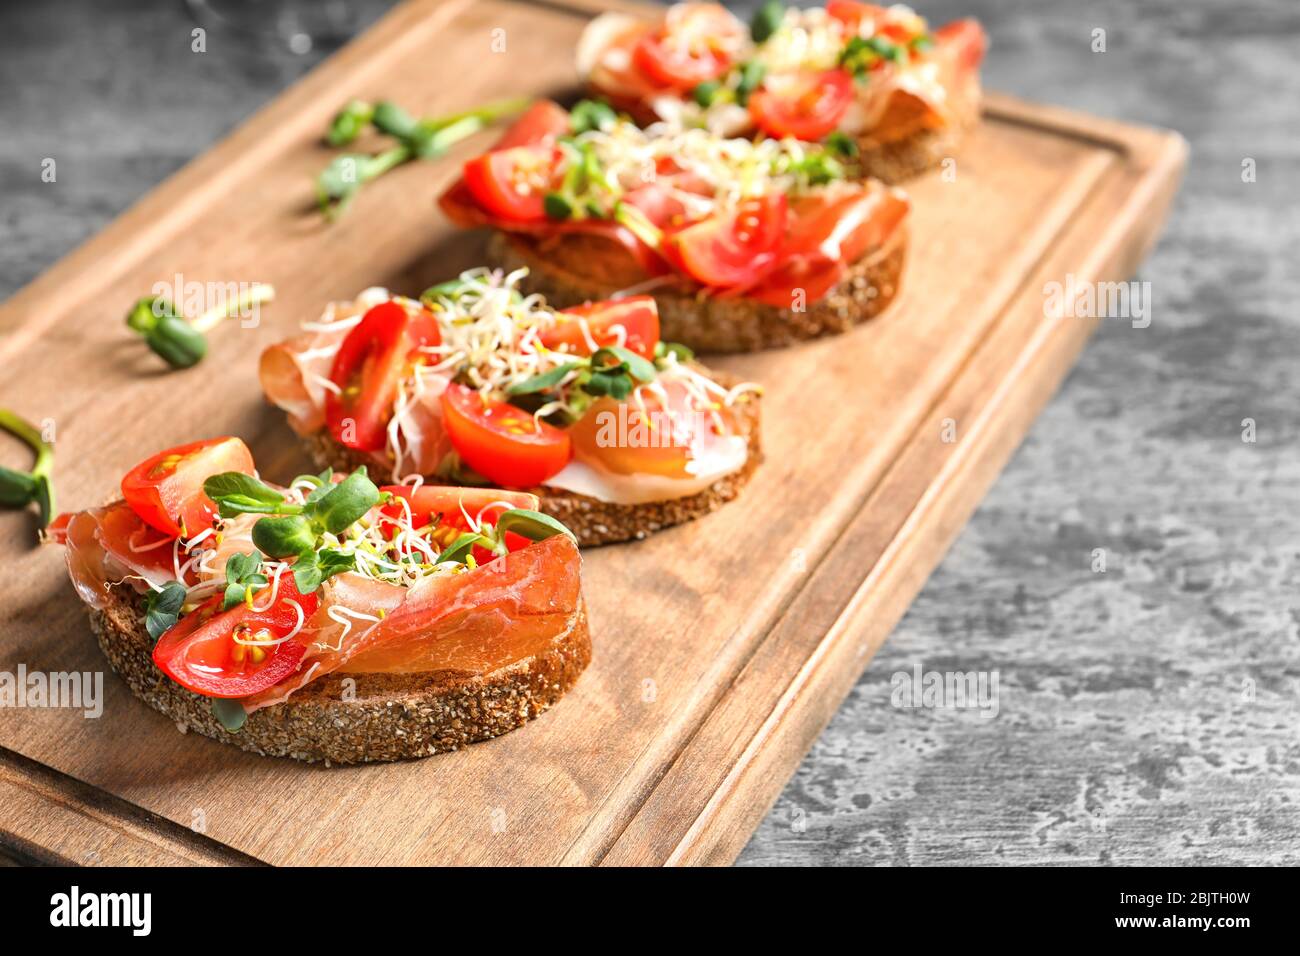 Delicious bruschettas with prosciutto and tomato on wooden board Stock Photo